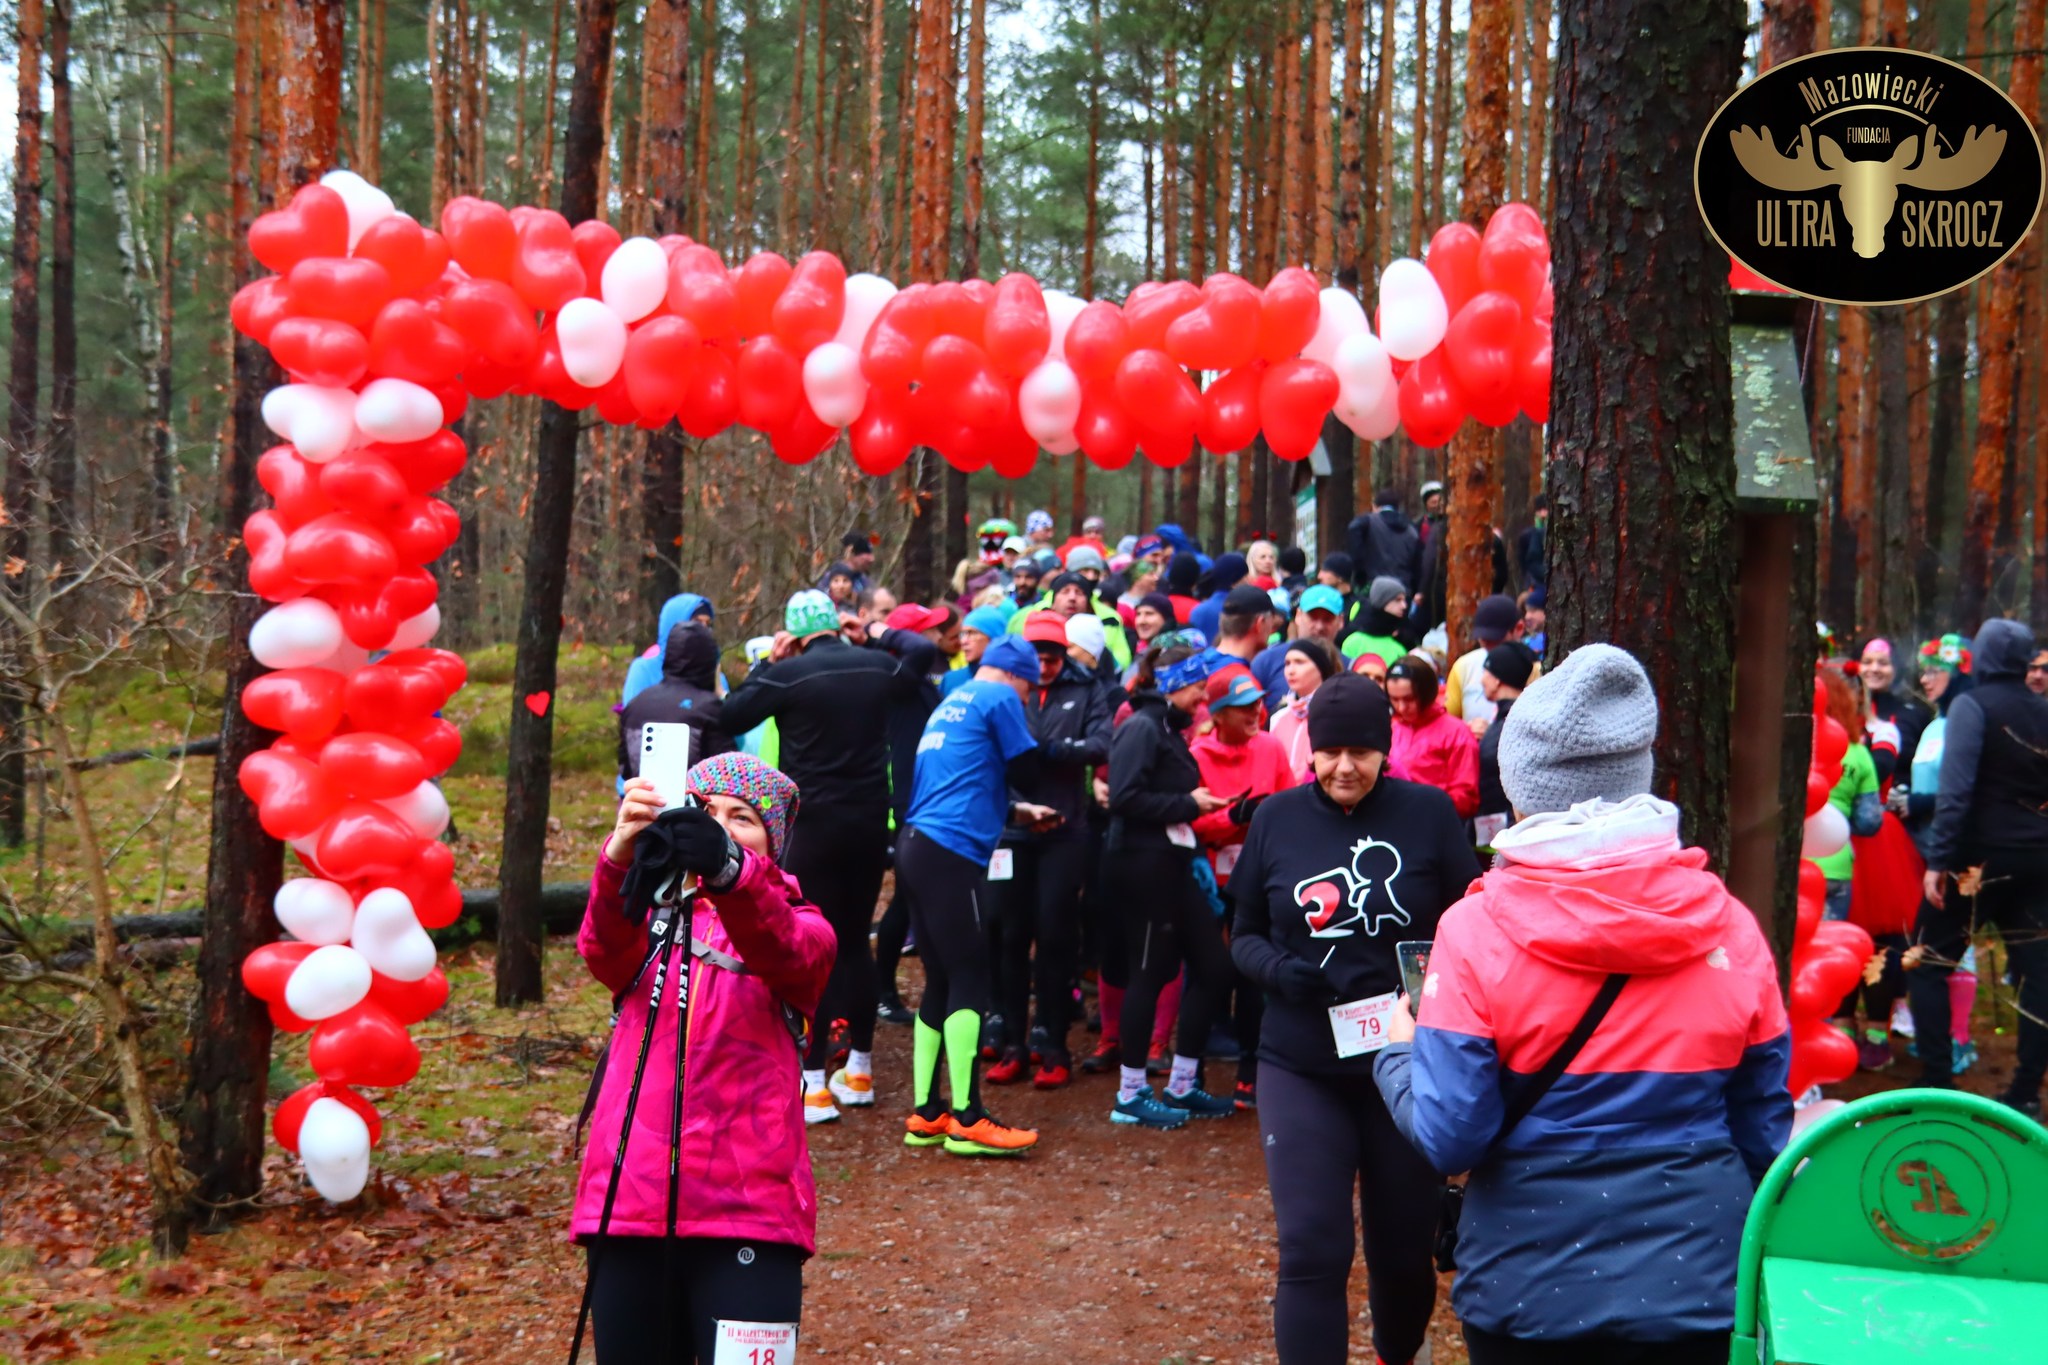 Ścieżka w lesie. Pomiędzy dzrzewami zawieszony łańcuch biało-czerwonych balonów wskazujący start biegu. Na starcie duża grupa osób